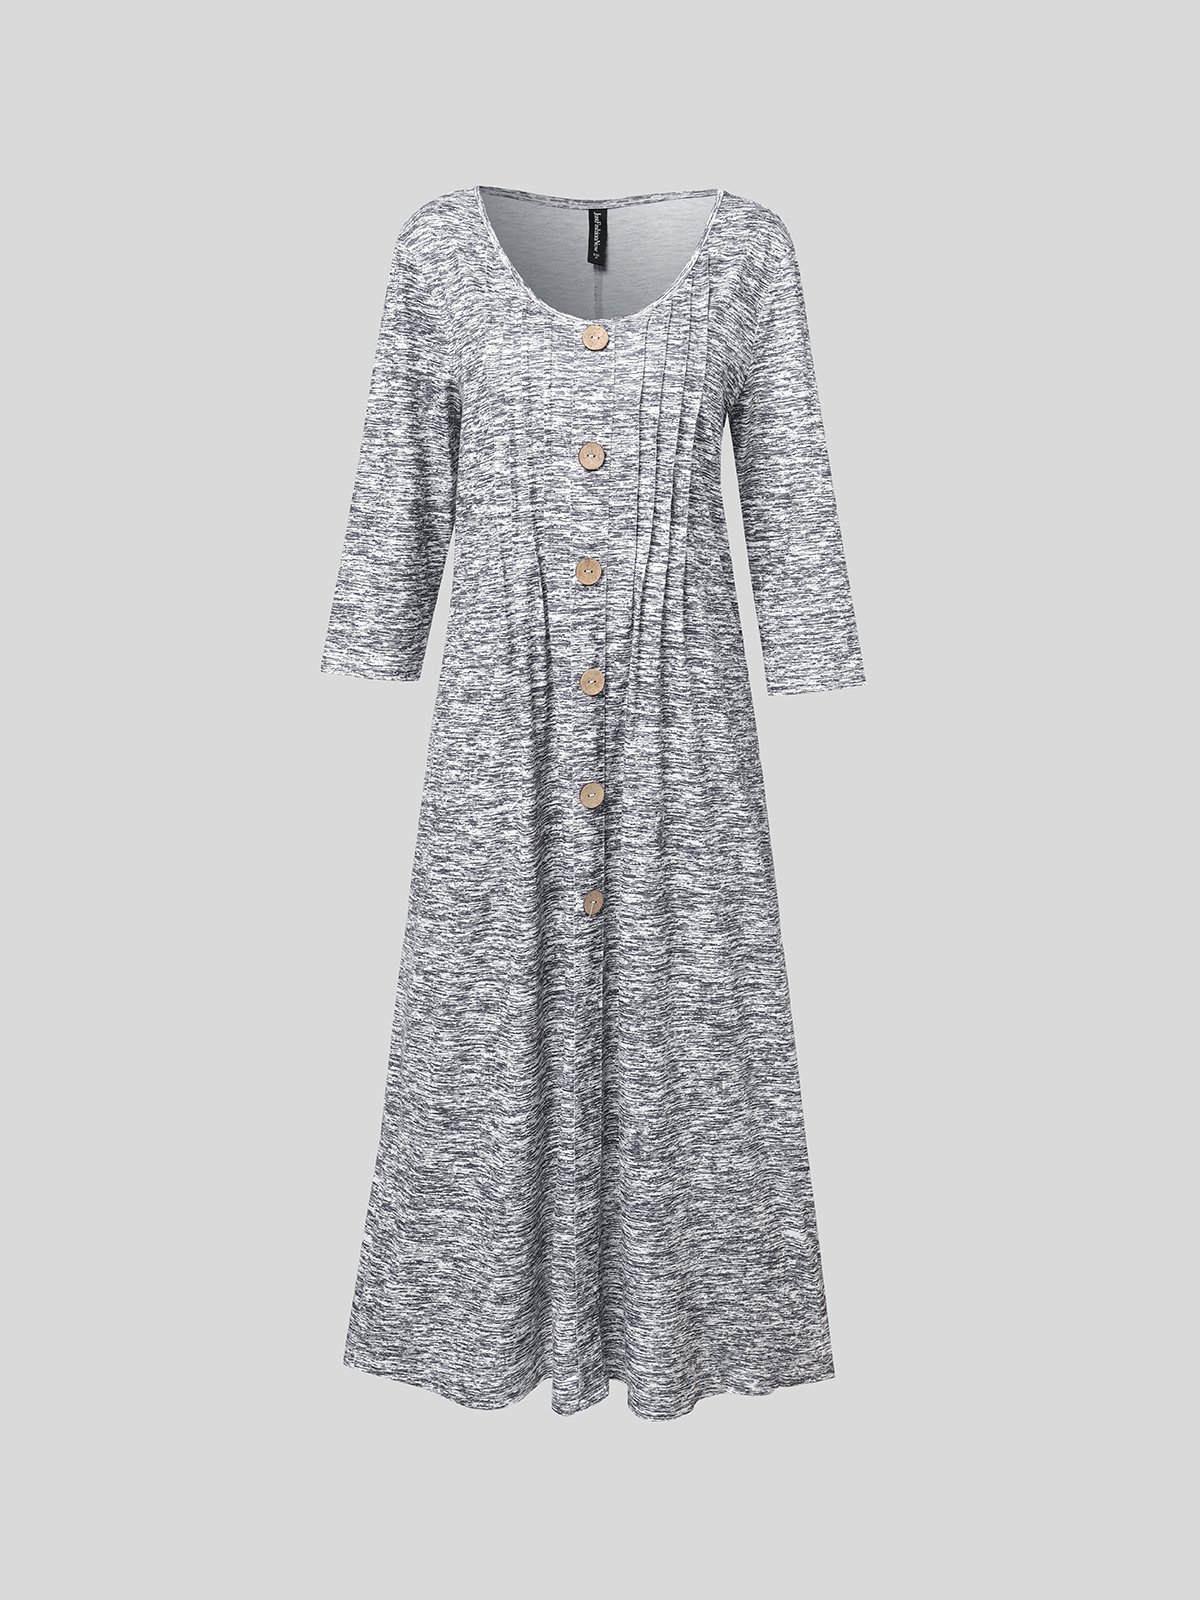 Robes Décontracté Plain Printemps Polyester Col V Naturel Quotidien Coupe Régulière Mi-longue pour Femmes